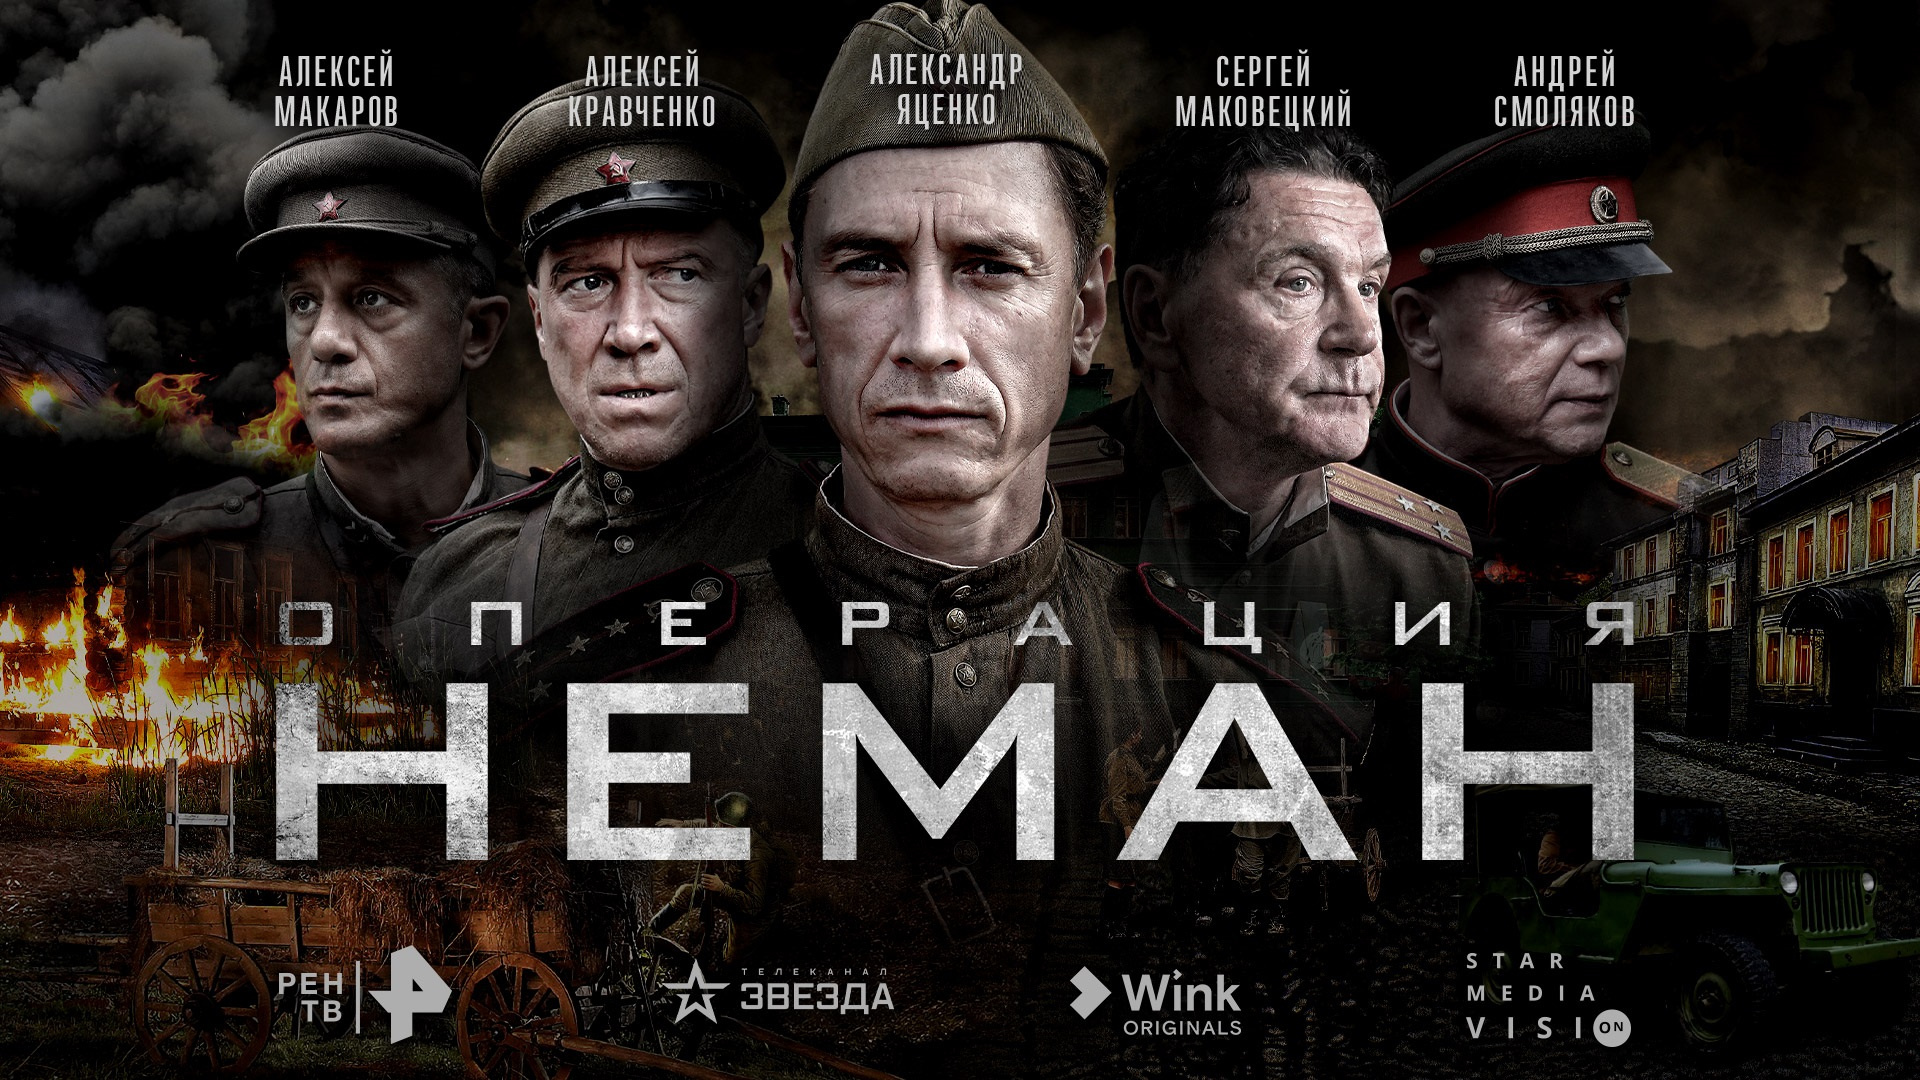 Военно-историческое кино — один из любимых жанров зрителей Wink, по словам директора видеосервиса Антона Володькина